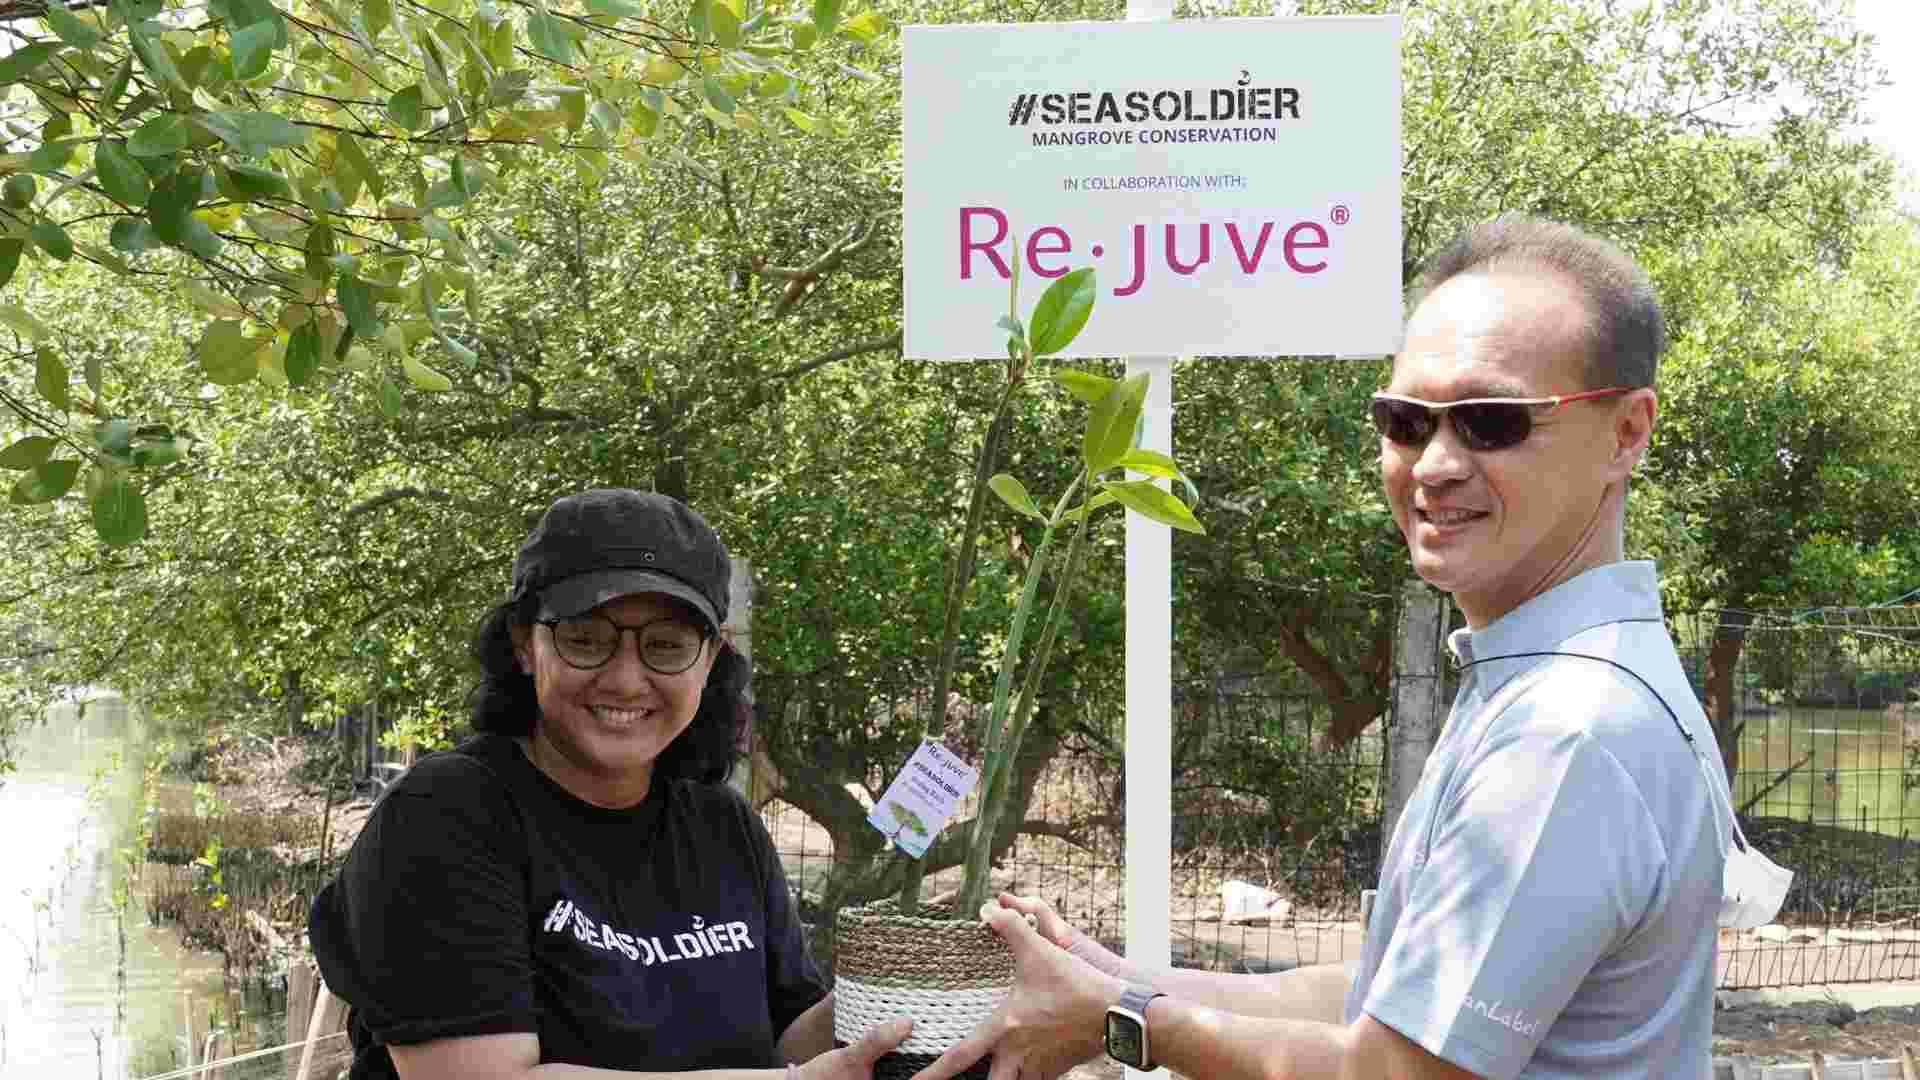 Melanjutkan Aksi Peduli Terhadap Lingkungan Re.juve Tanam 2.500 Bibit Mangrove Bersama Seasoldier 1 1